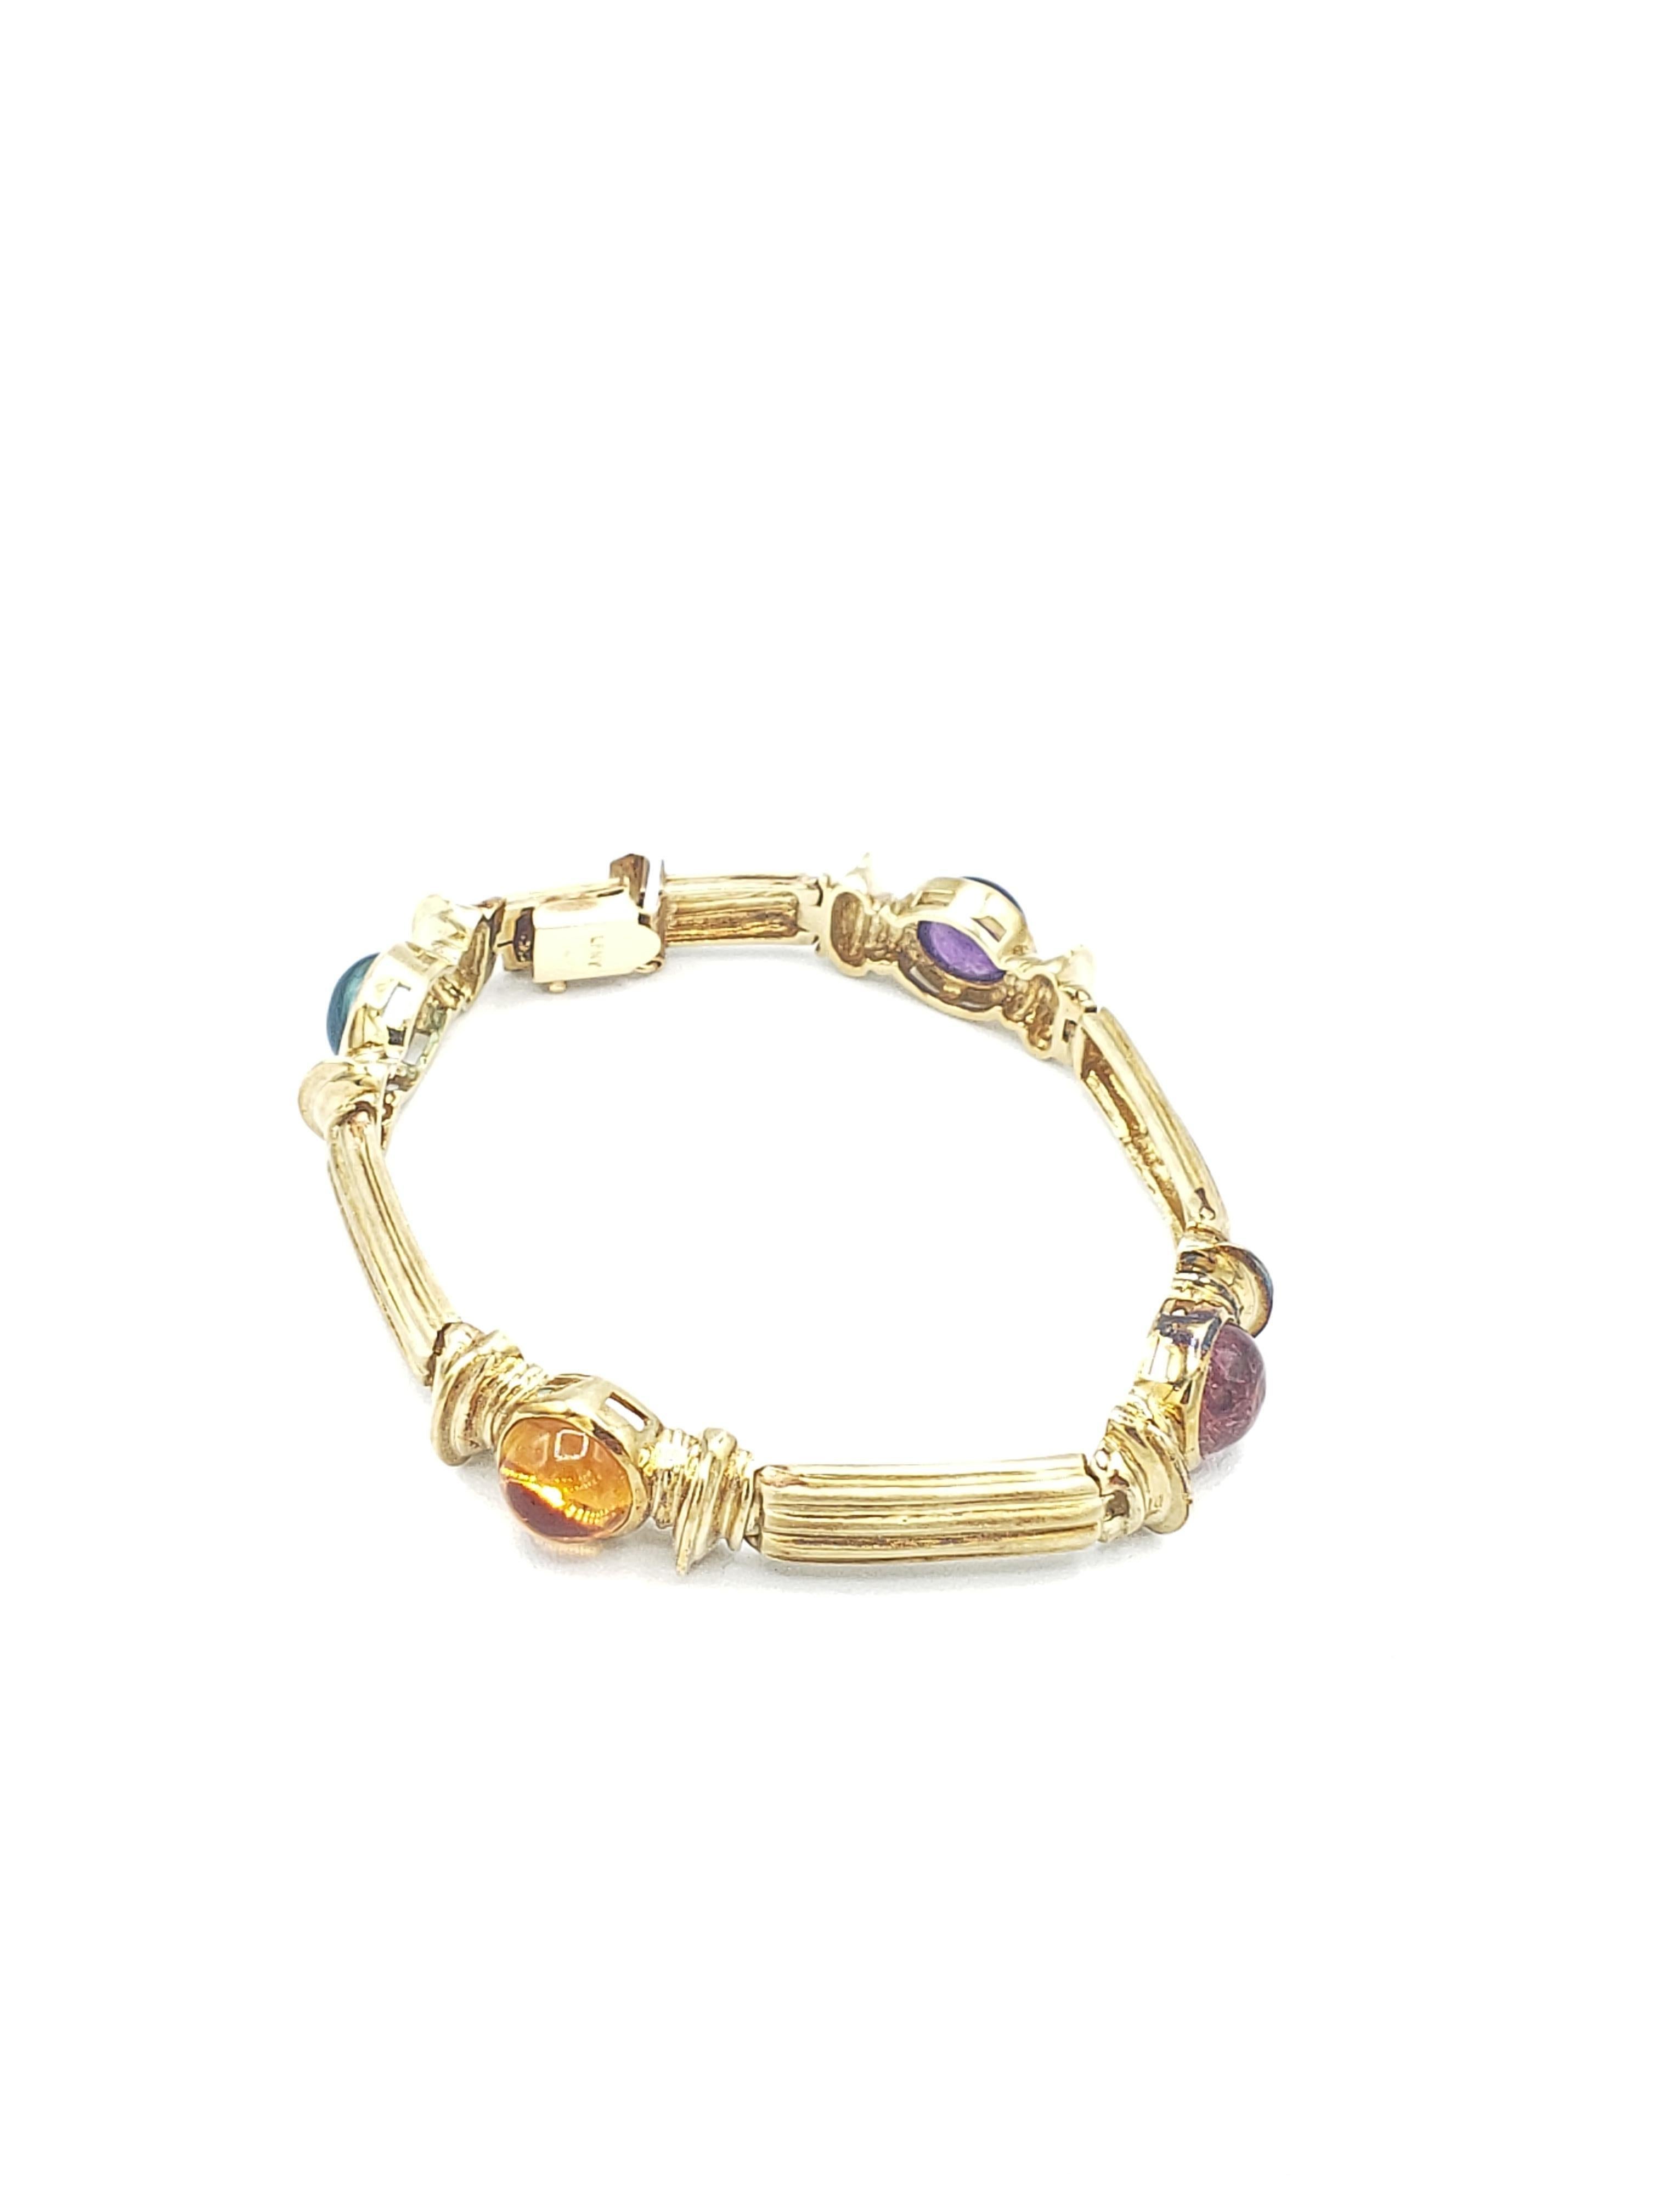 Ce magnifique bracelet s'ajoute à toute collection de bijoux. Réalisé en or jaune massif 14k, il est orné de magnifiques pierres précieuses : tourmaline bleue et rose, améthyste et citrine. Le style enveloppant inspiré de la Nature lui confère une